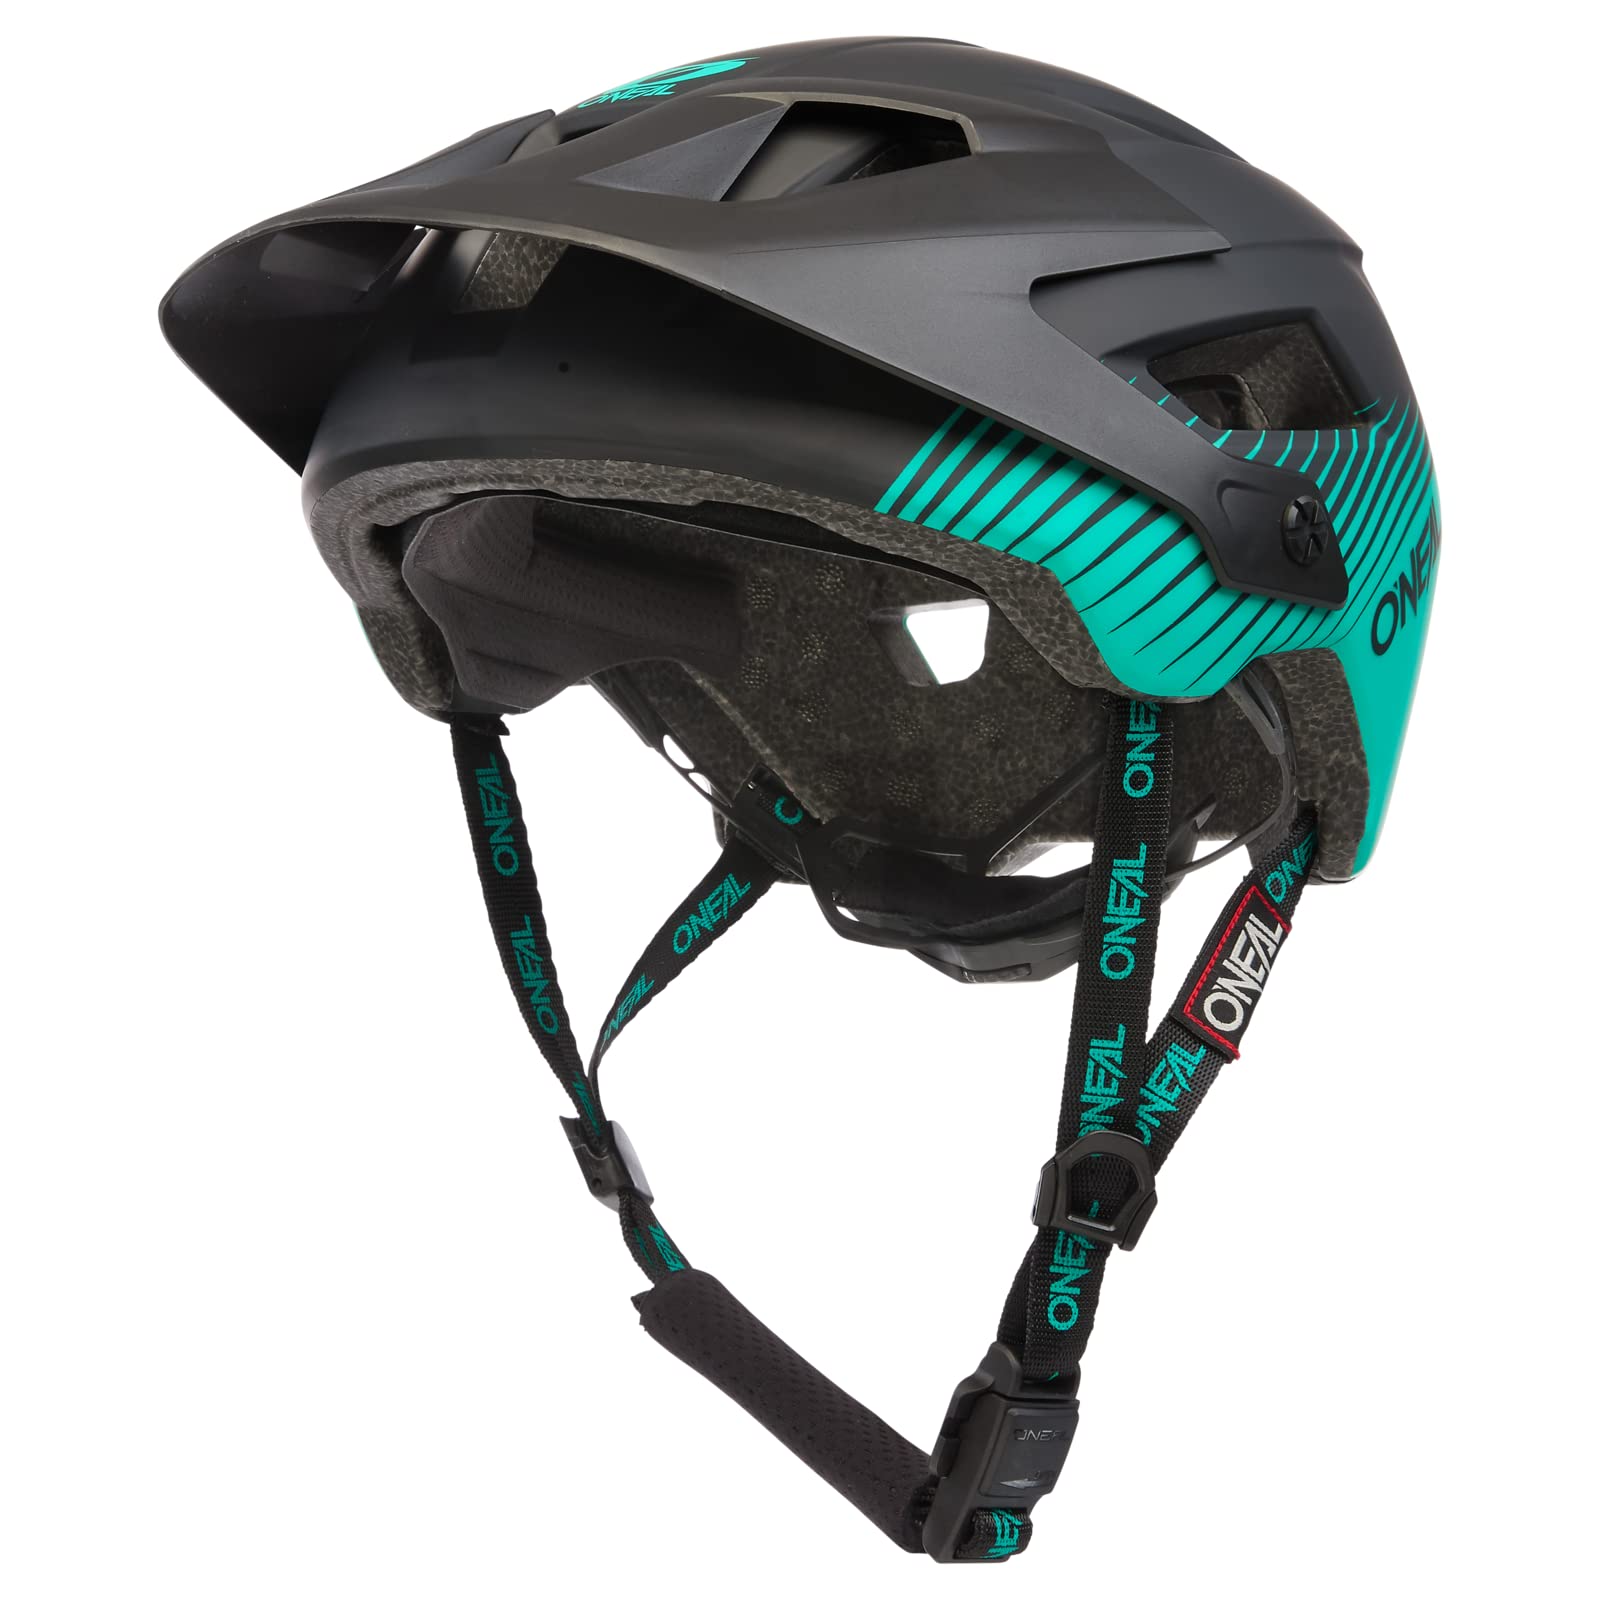 O'NEAL | Mountainbike-Helm | Enduro All-Mountain | Belüftungsöffnungen zur Kühlung, Polster waschbar, Robustes ABS | Helmet Defender Grill V.22 | Erwachsene | Schwarz Grün | Größe L-XL von O'NEAL